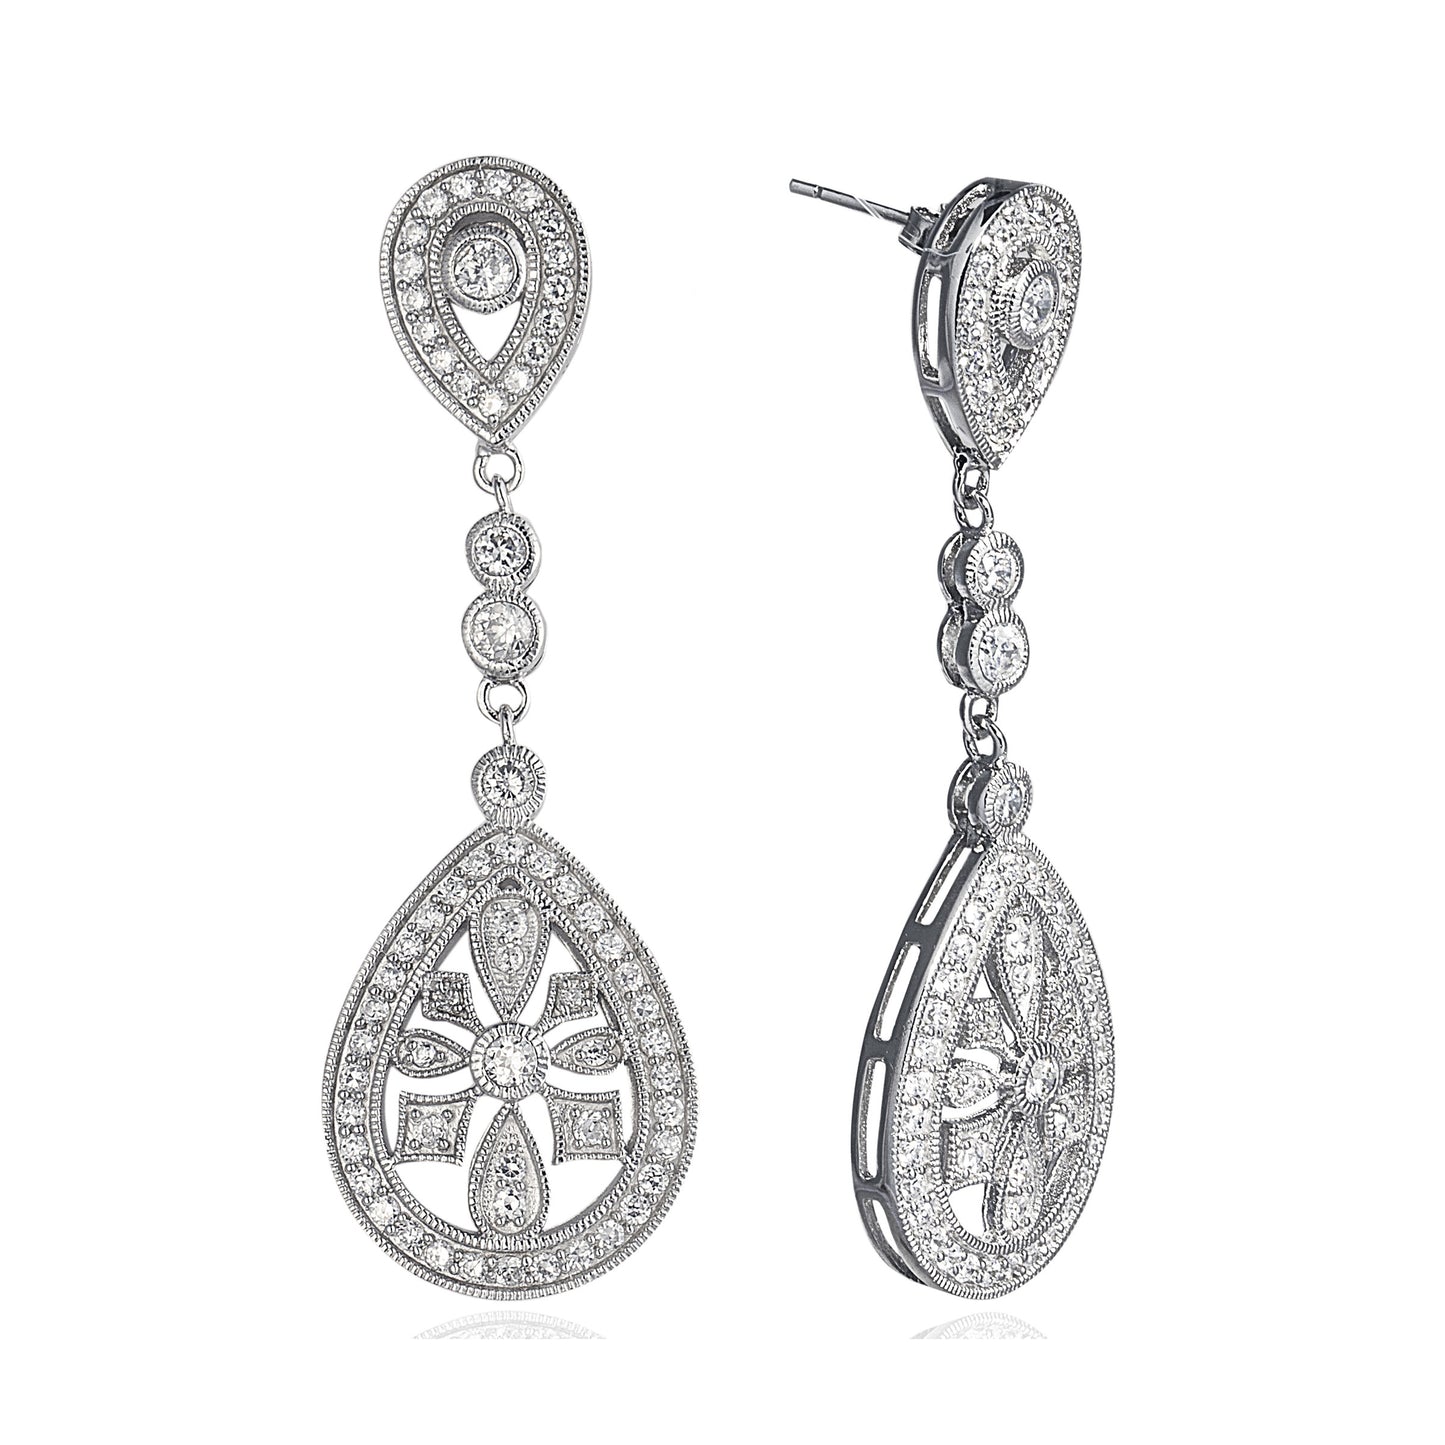 Chandelier Drop Earrings in 925 sterling silver, cubic zirconia stones in an elaborate chandelier design. Worldwide shipping from Australia.